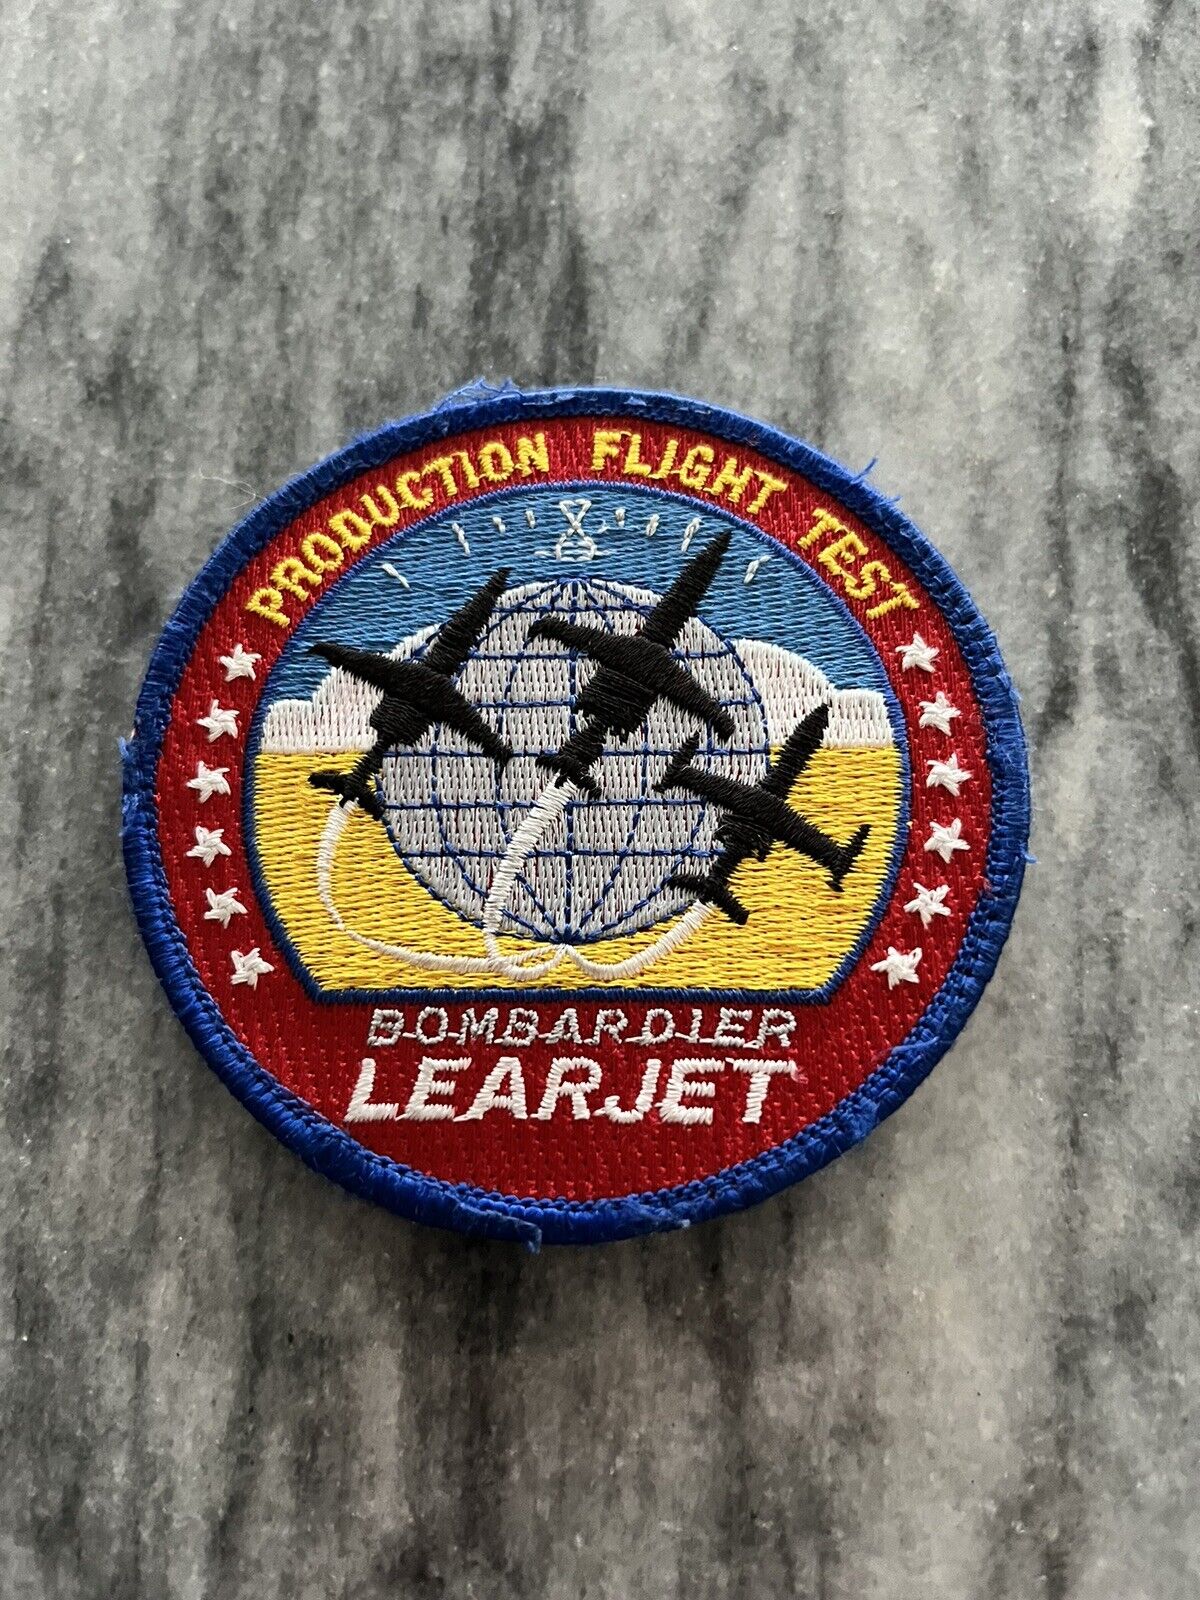 Bombardier Learjet Production Flight Test Patch - 